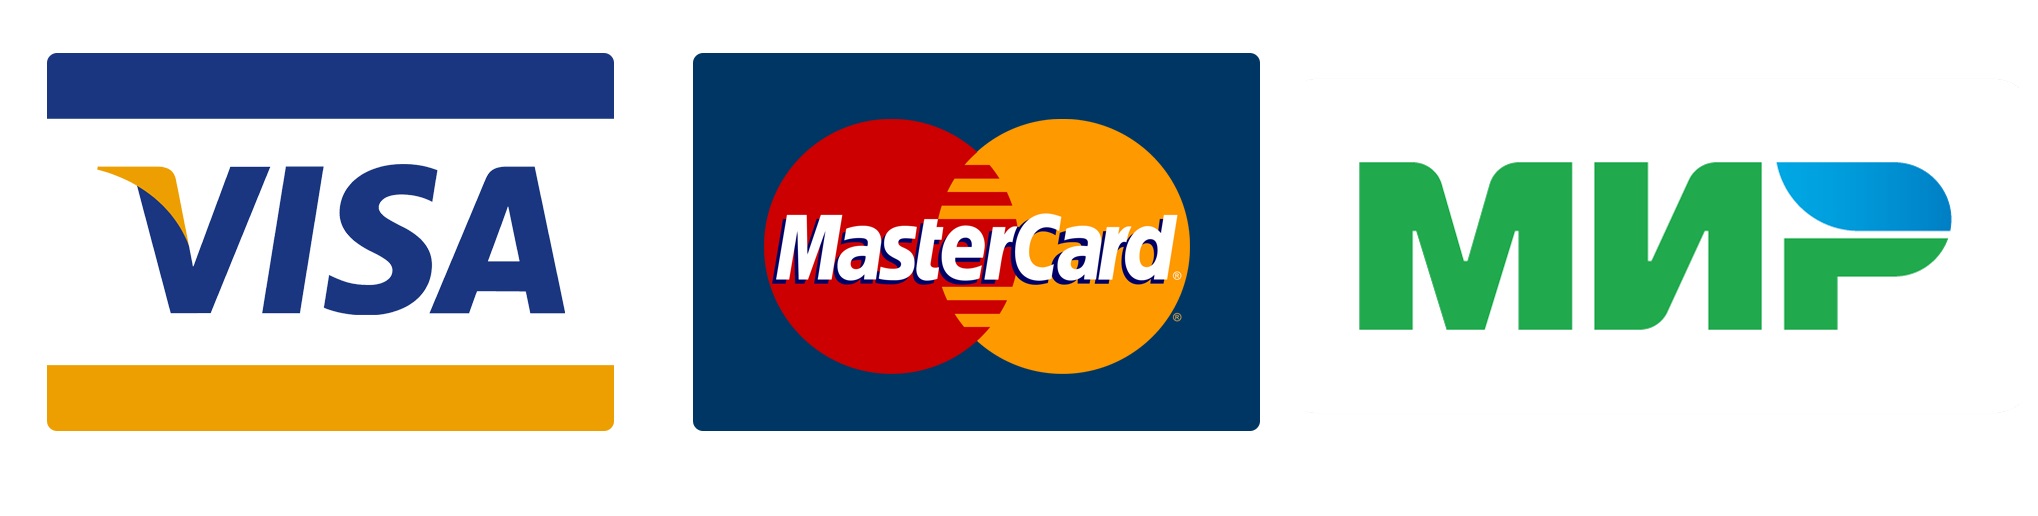 Visa master. Логотипы платёжной системы виза мастер карт. Эмблемы банковских карт. Виза мастер карт мир. Значки visa MASTERCARD мир.